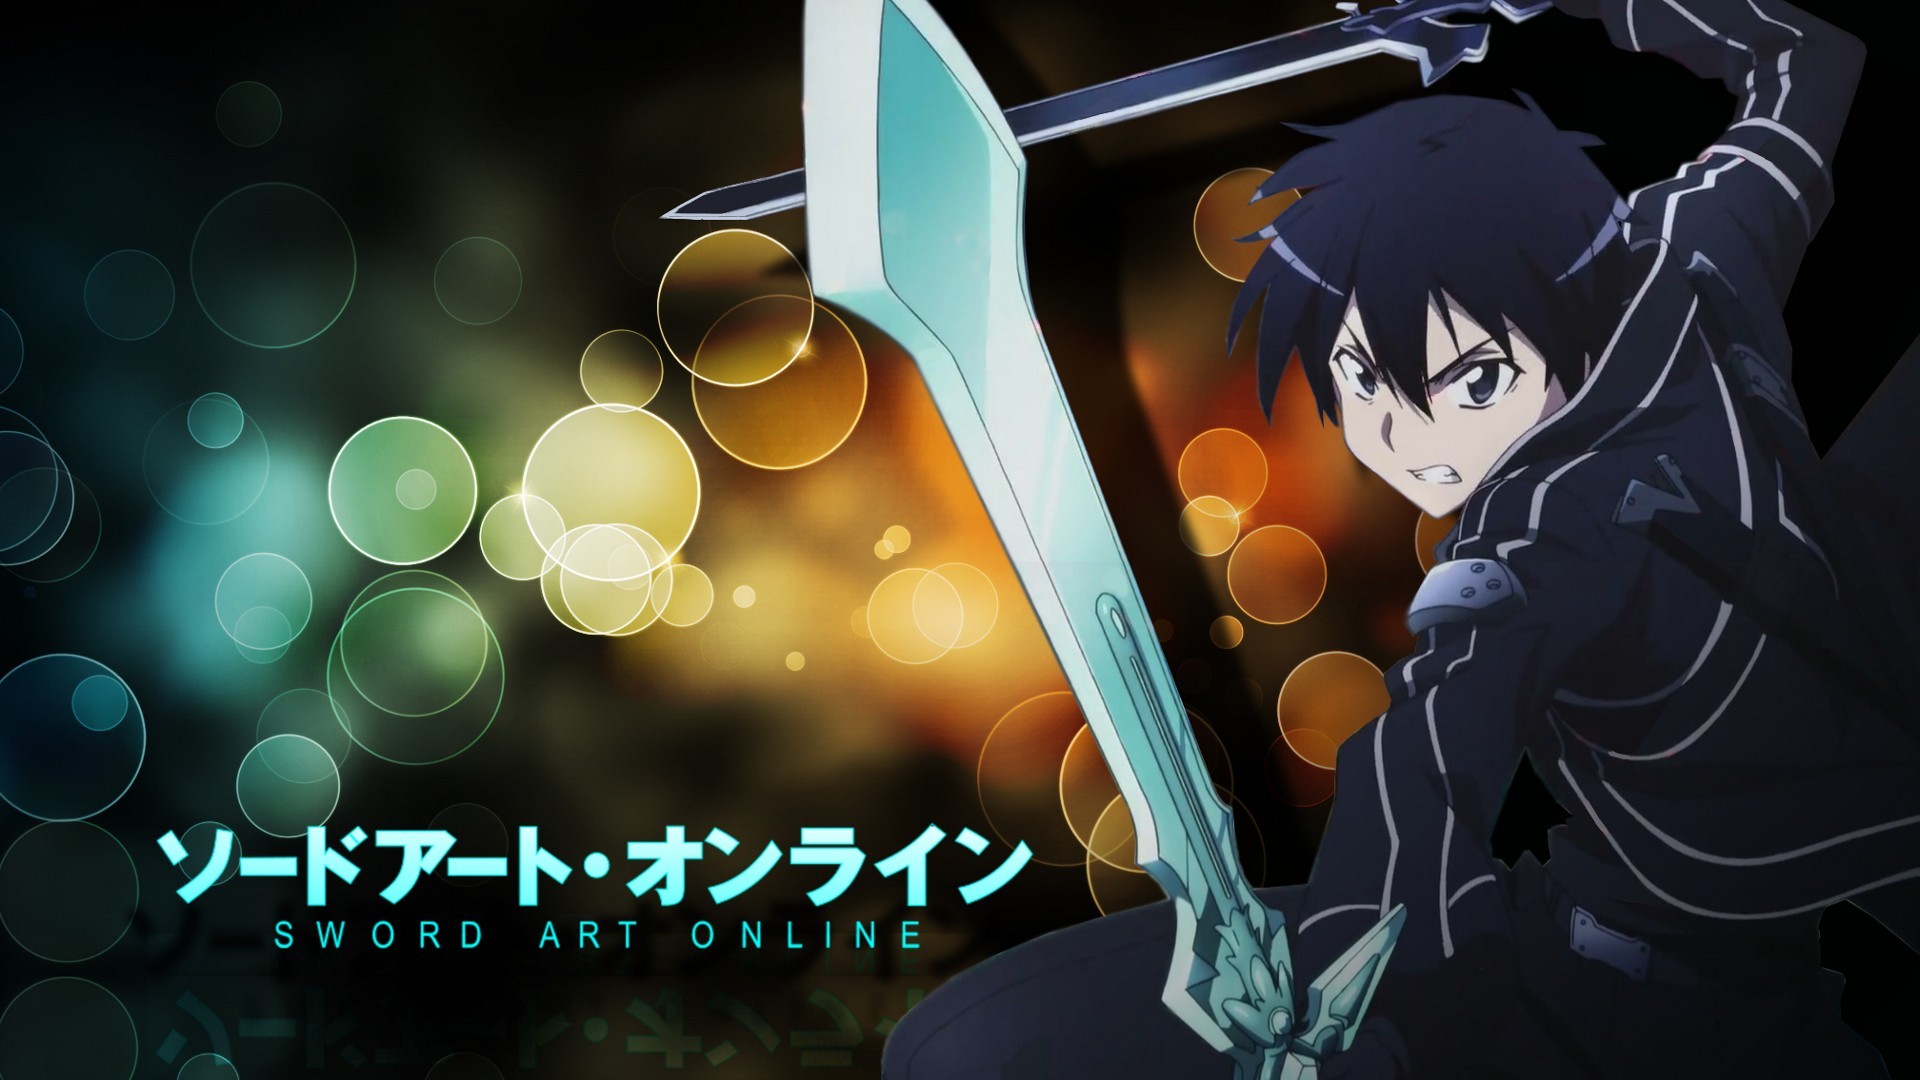 Sword Art Online Live Wallpaper Image